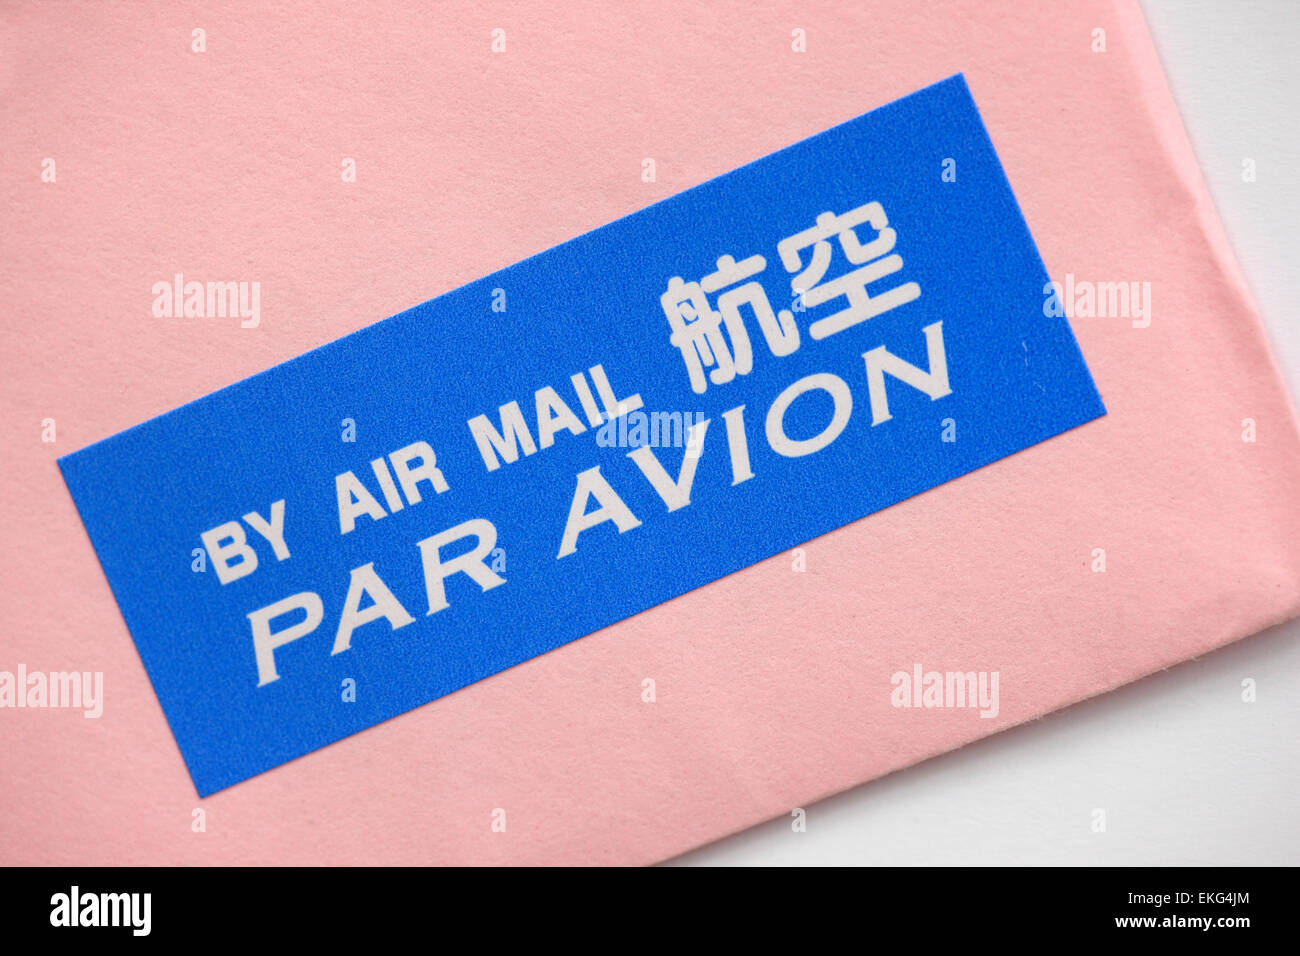 Por correo aéreo par avion etiqueta en una envoltura rosa Foto de stock